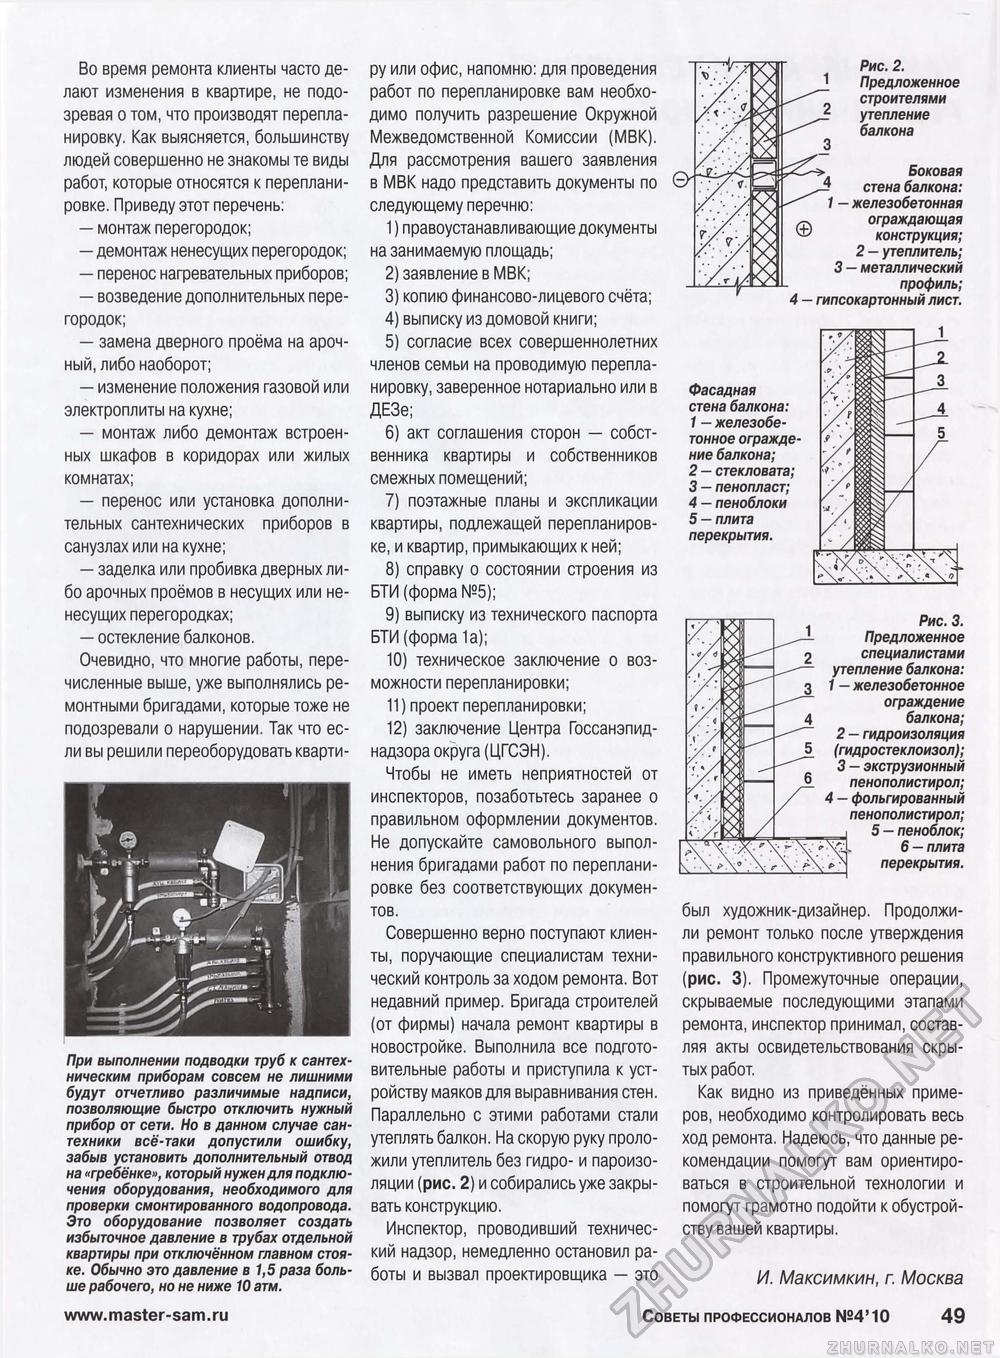 Советы профессионалов 2010-04, страница 49